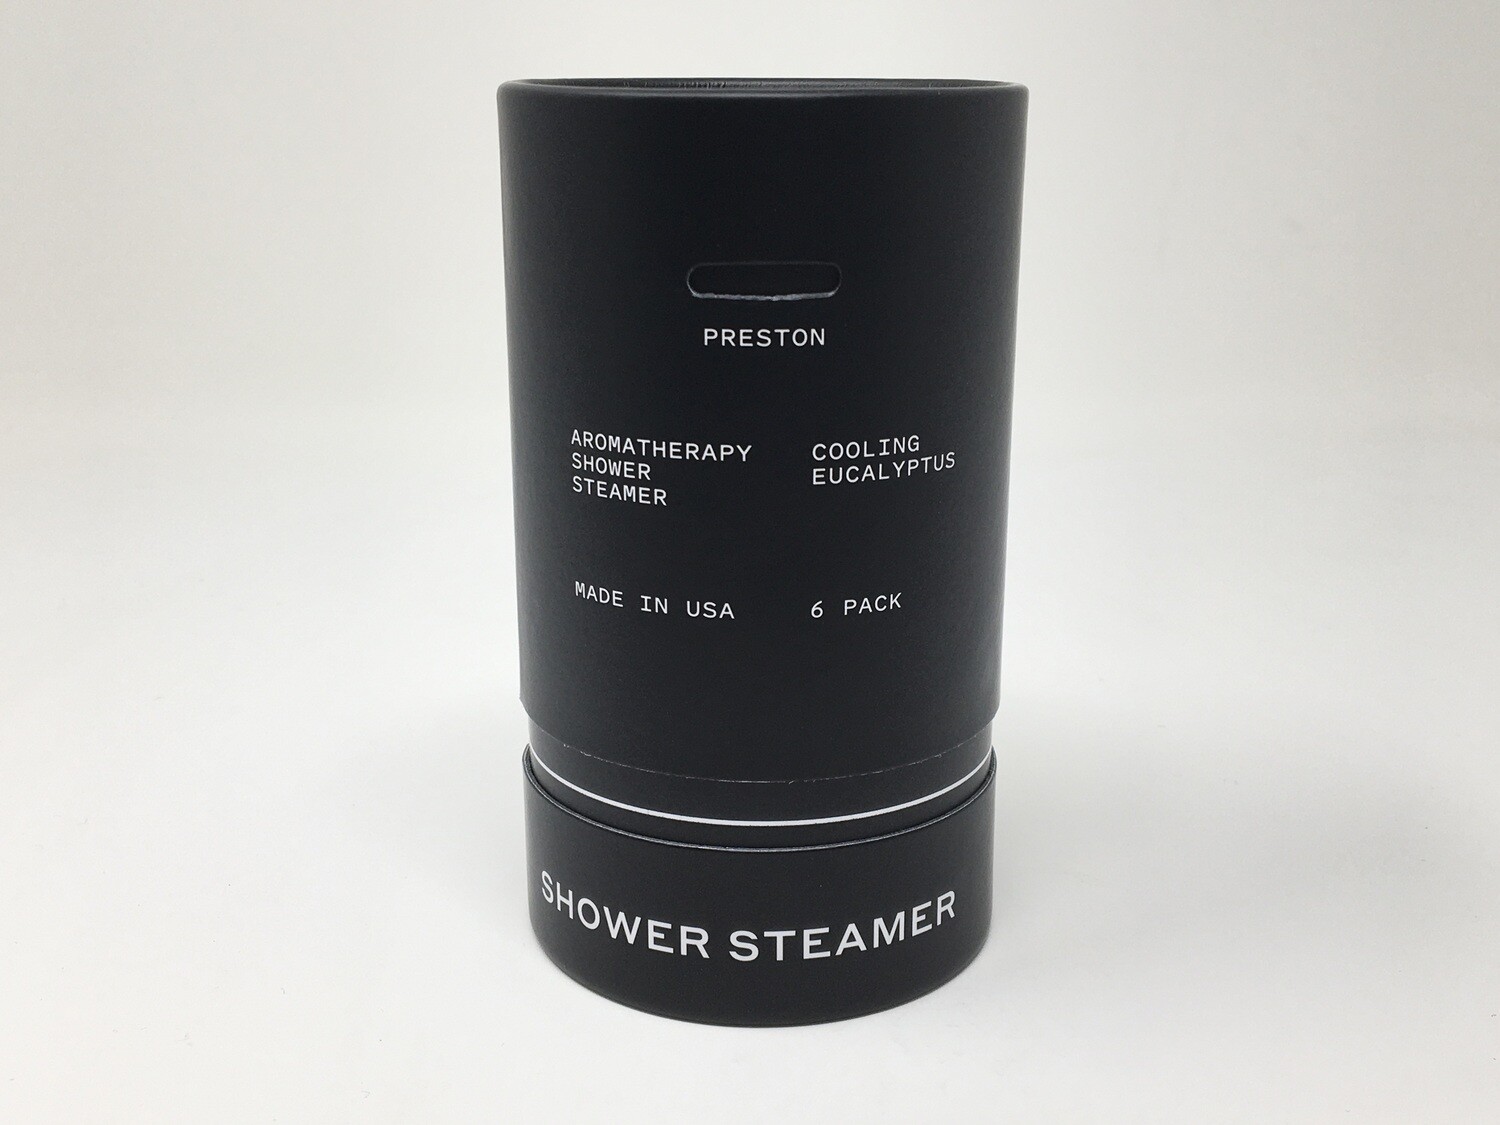 Shower Steamer Cooling eucalptus 6pk(Preston)